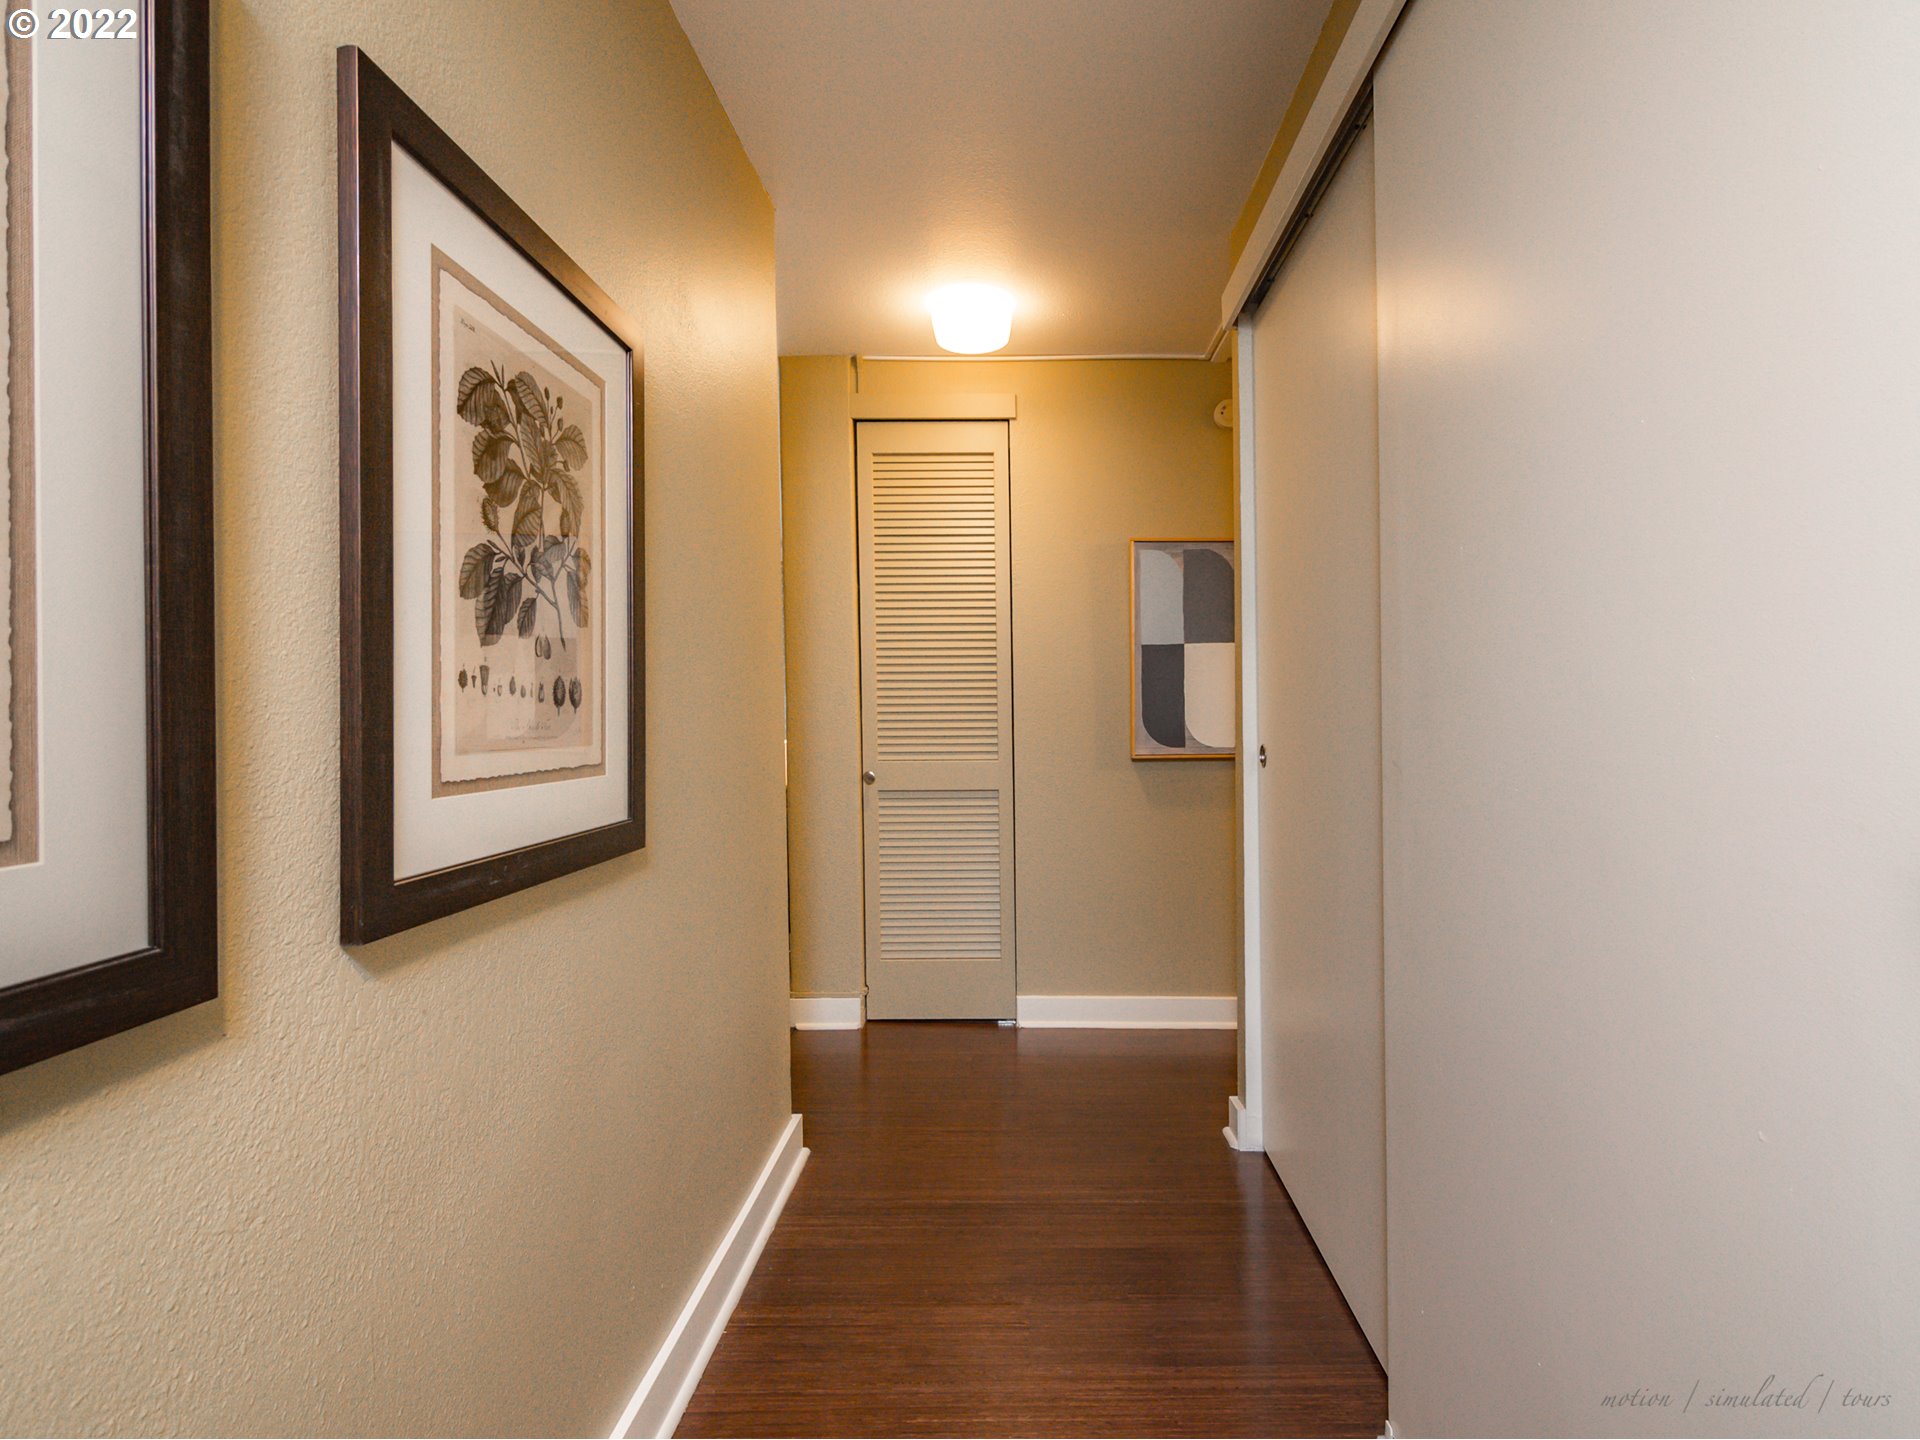 Photo #4 Hallway